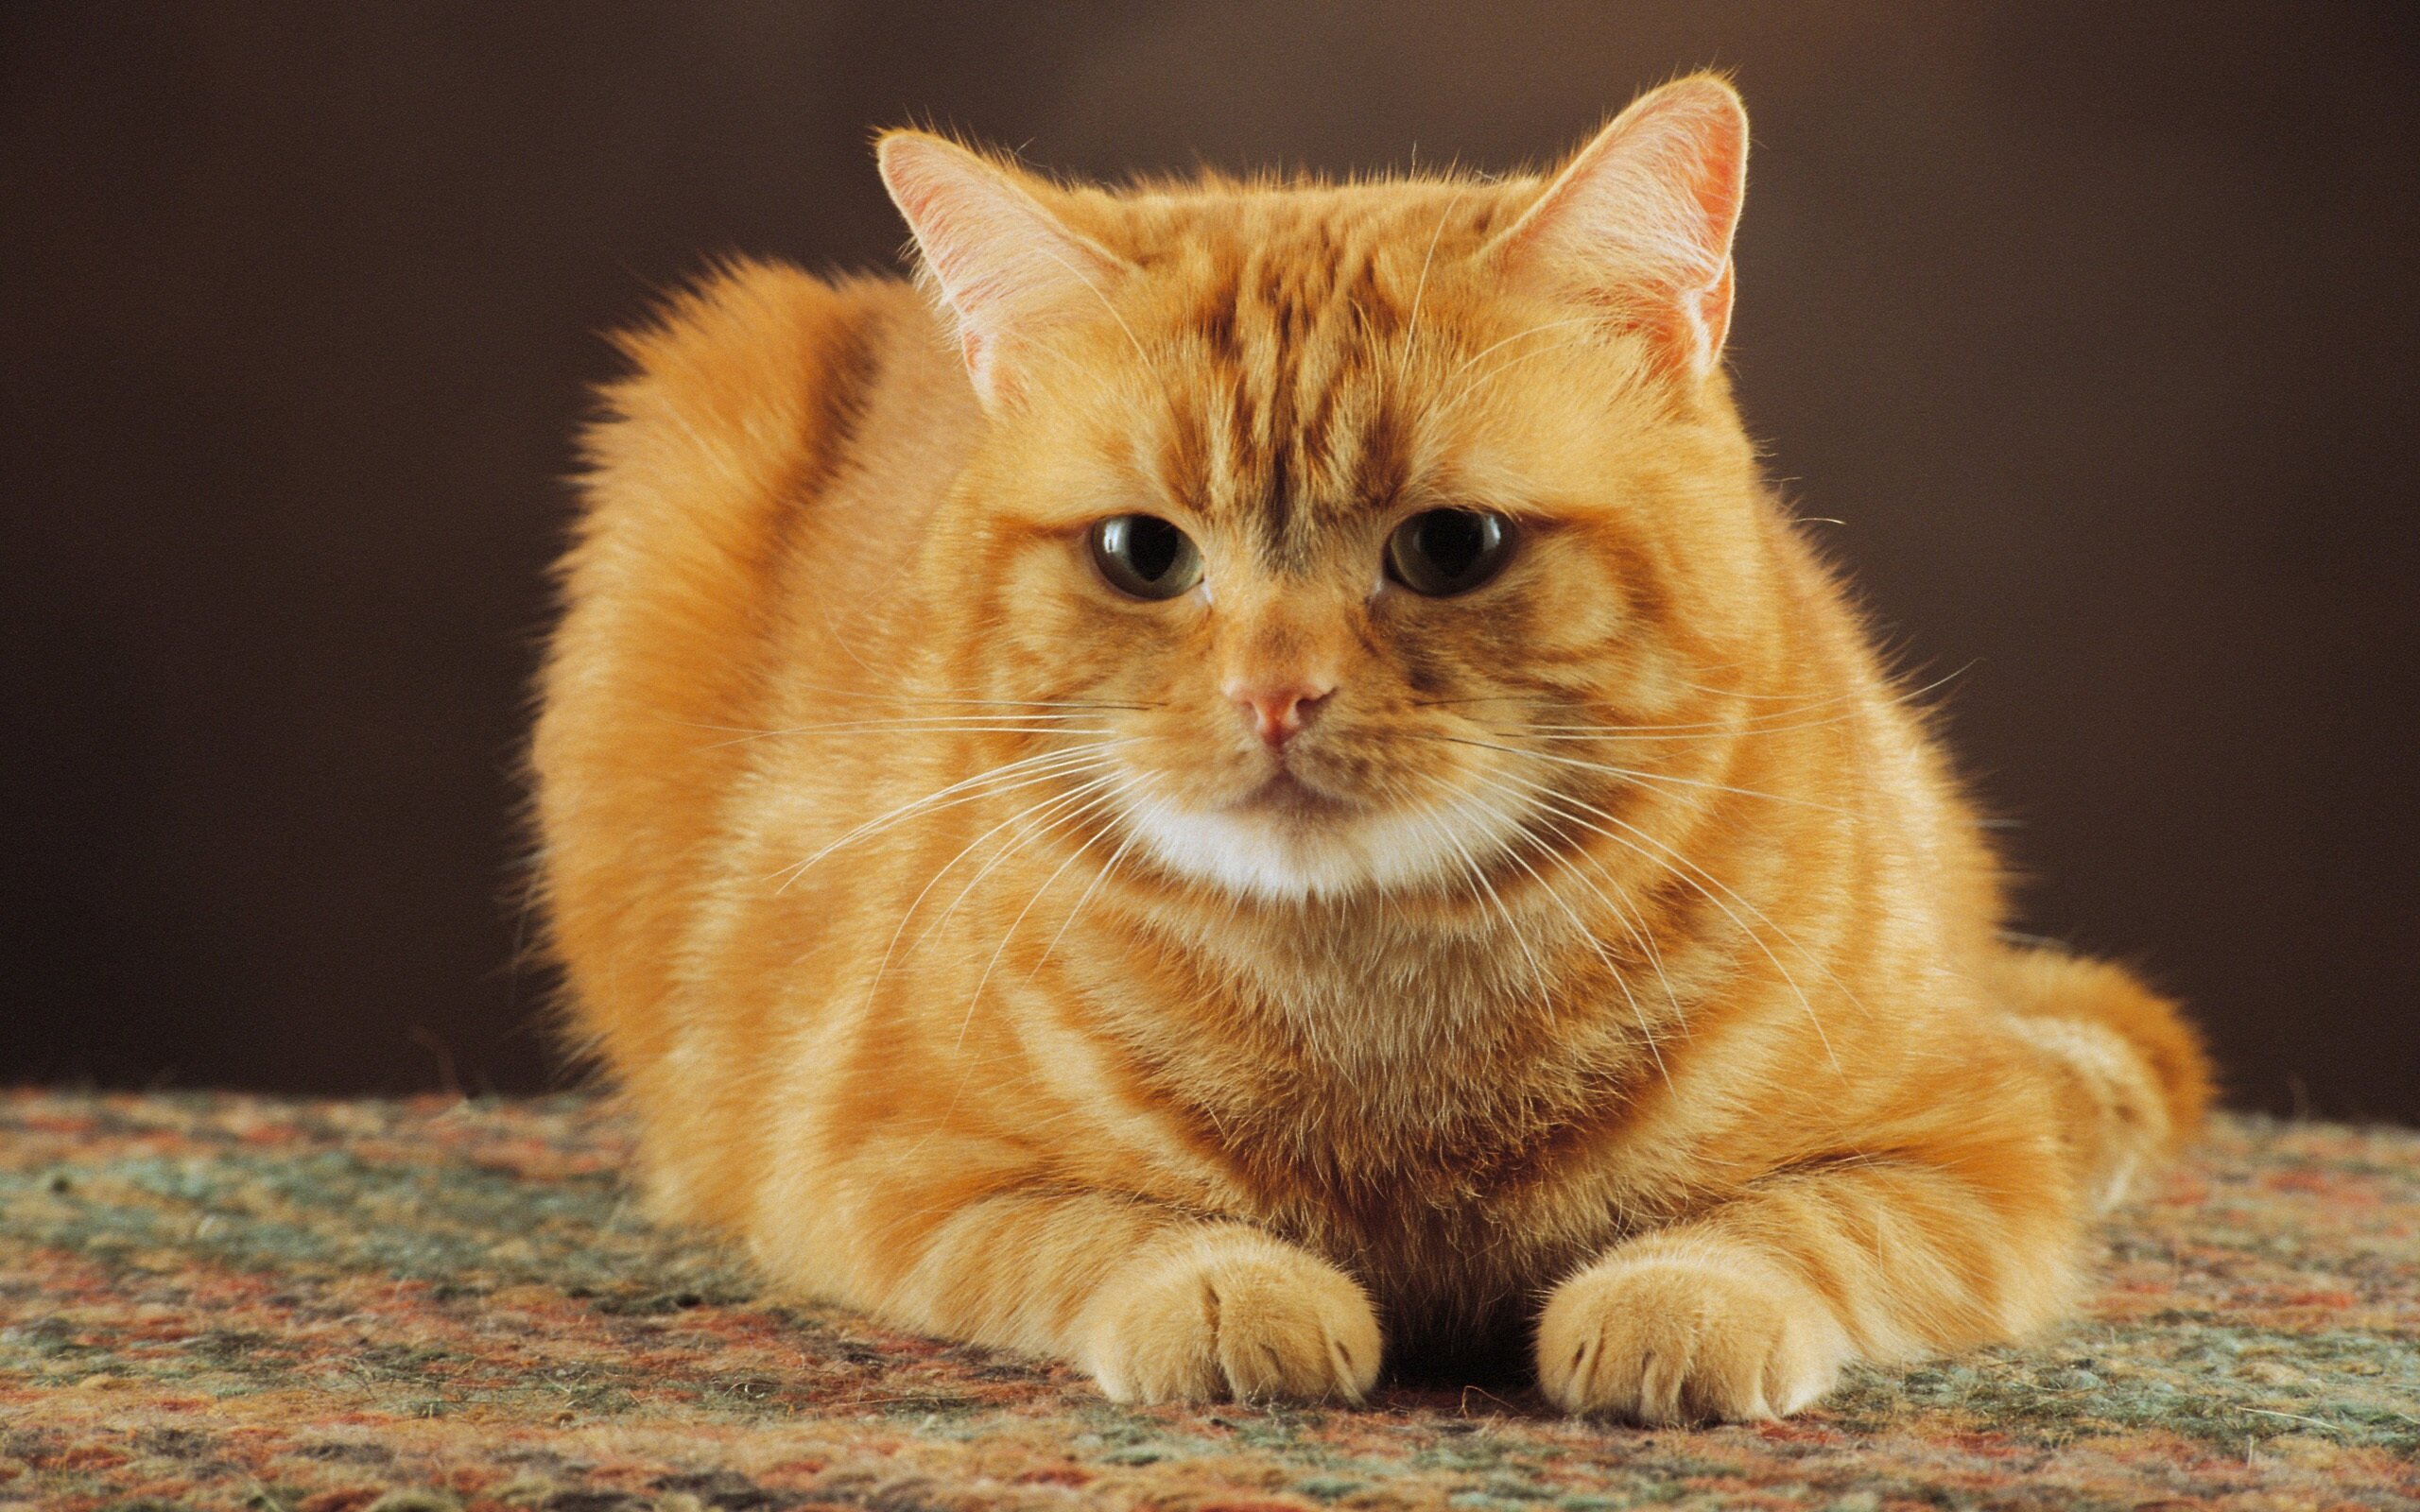 sarı ve turuncu renkli tüylere sahip kedi